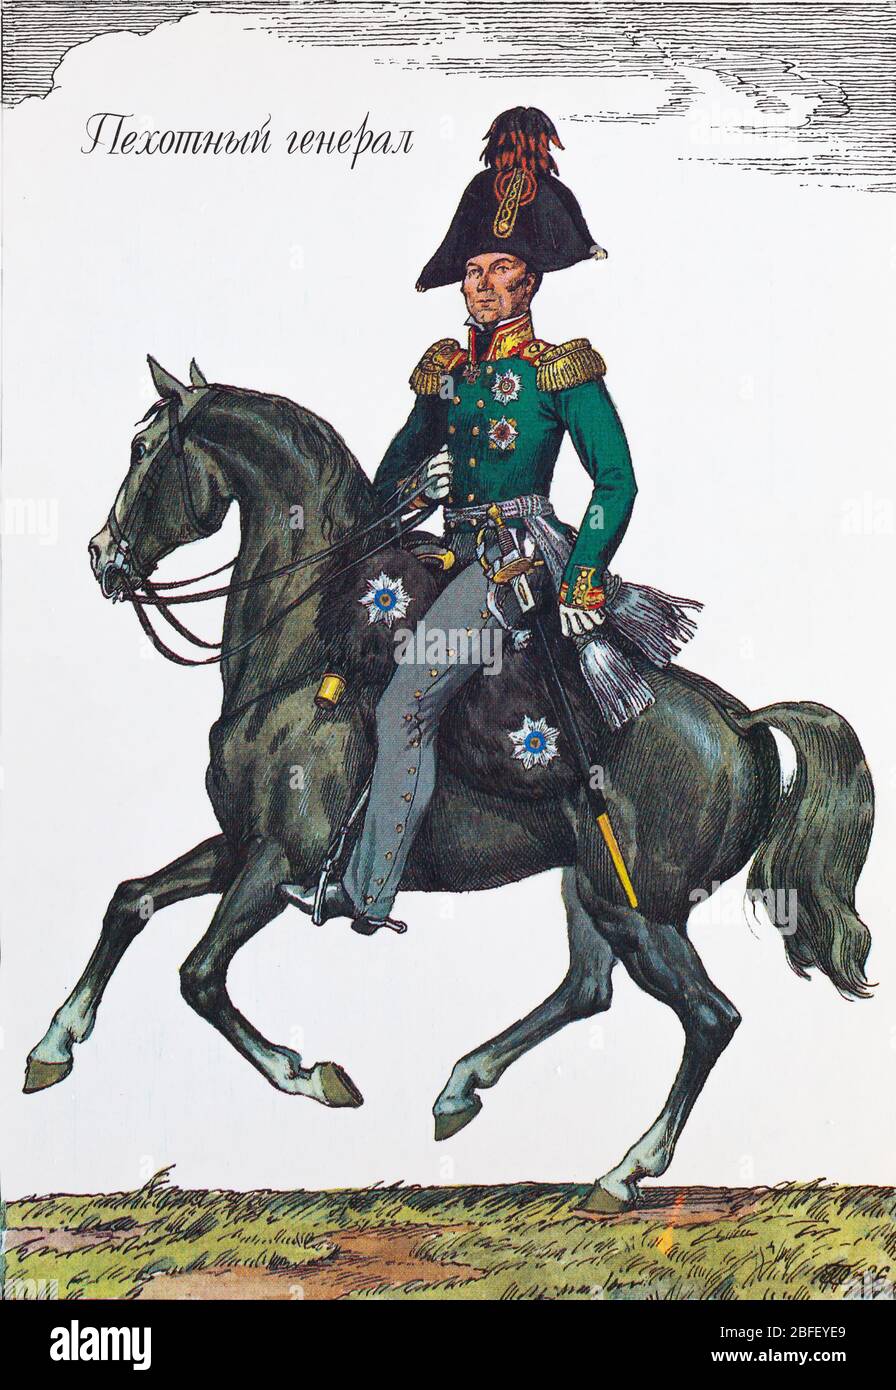 Général d'infanterie, 1812, uniforme de l'armée russe du XIXe siècle, Russie Banque D'Images